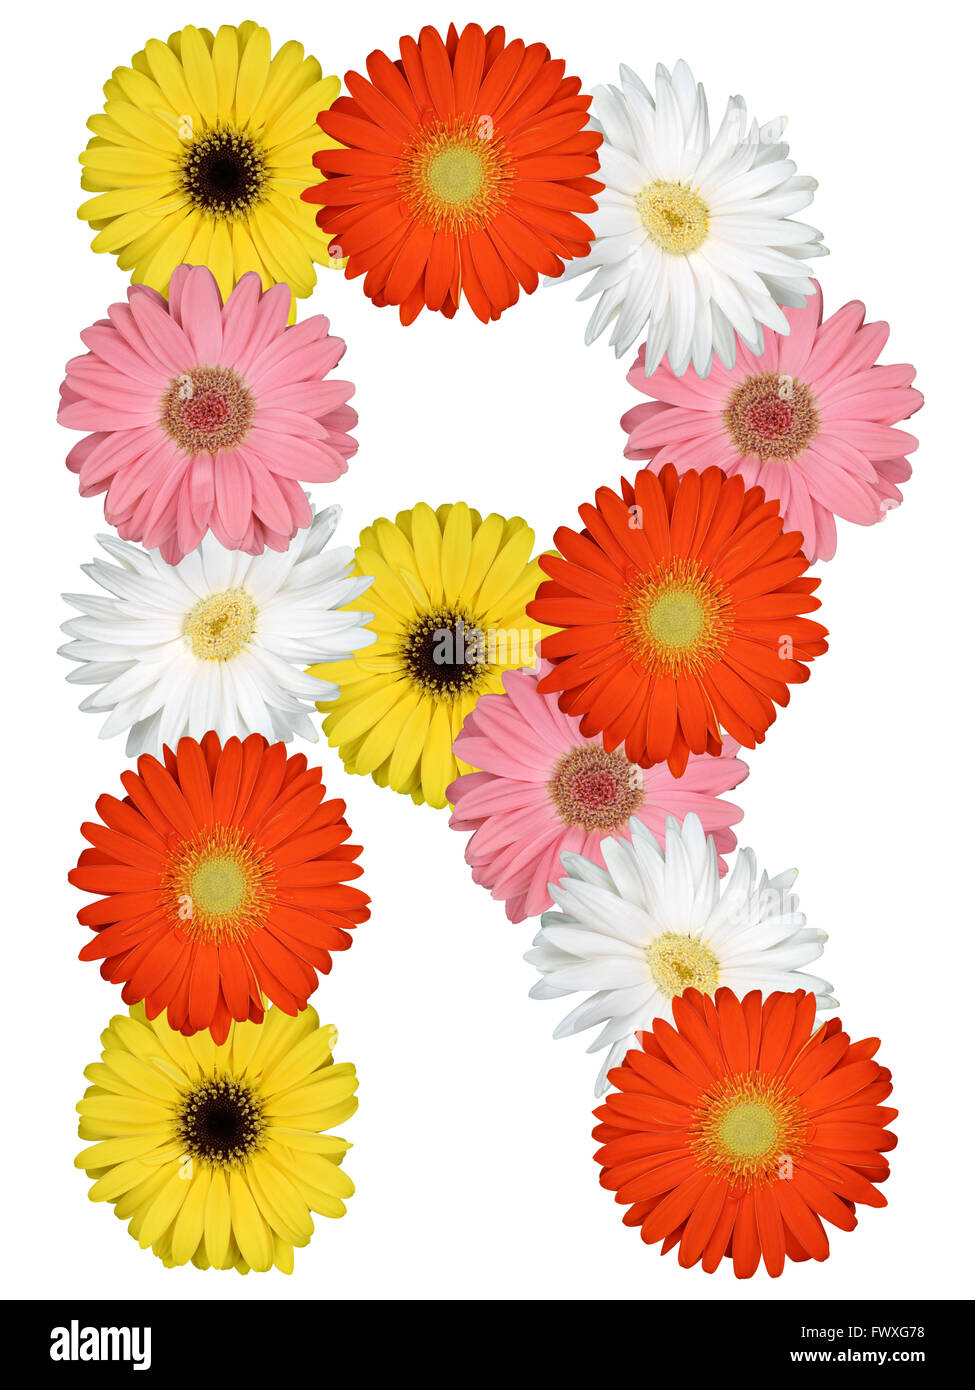 Lettre R Alphabet de fleurs isolé sur fond blanc Banque D'Images